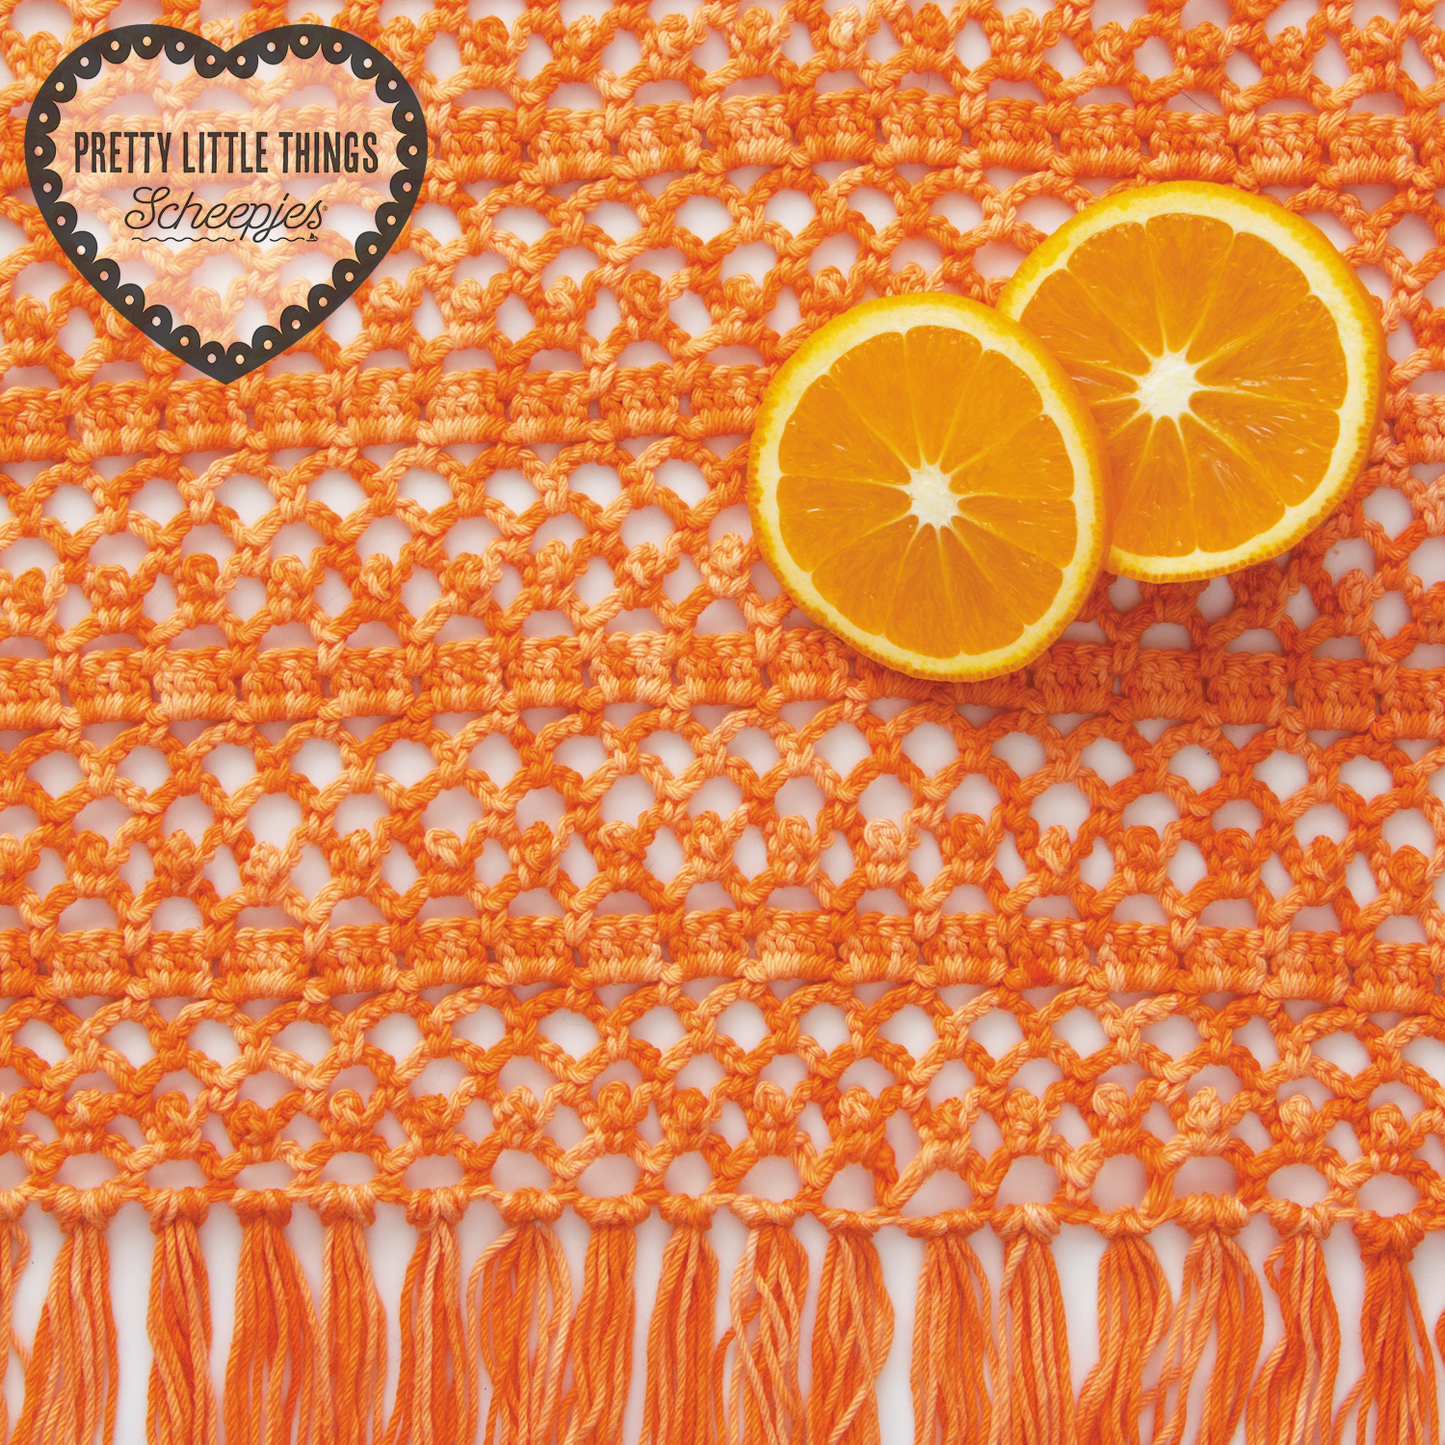 Scheepjes Pretty Little Things no. 16 Orange